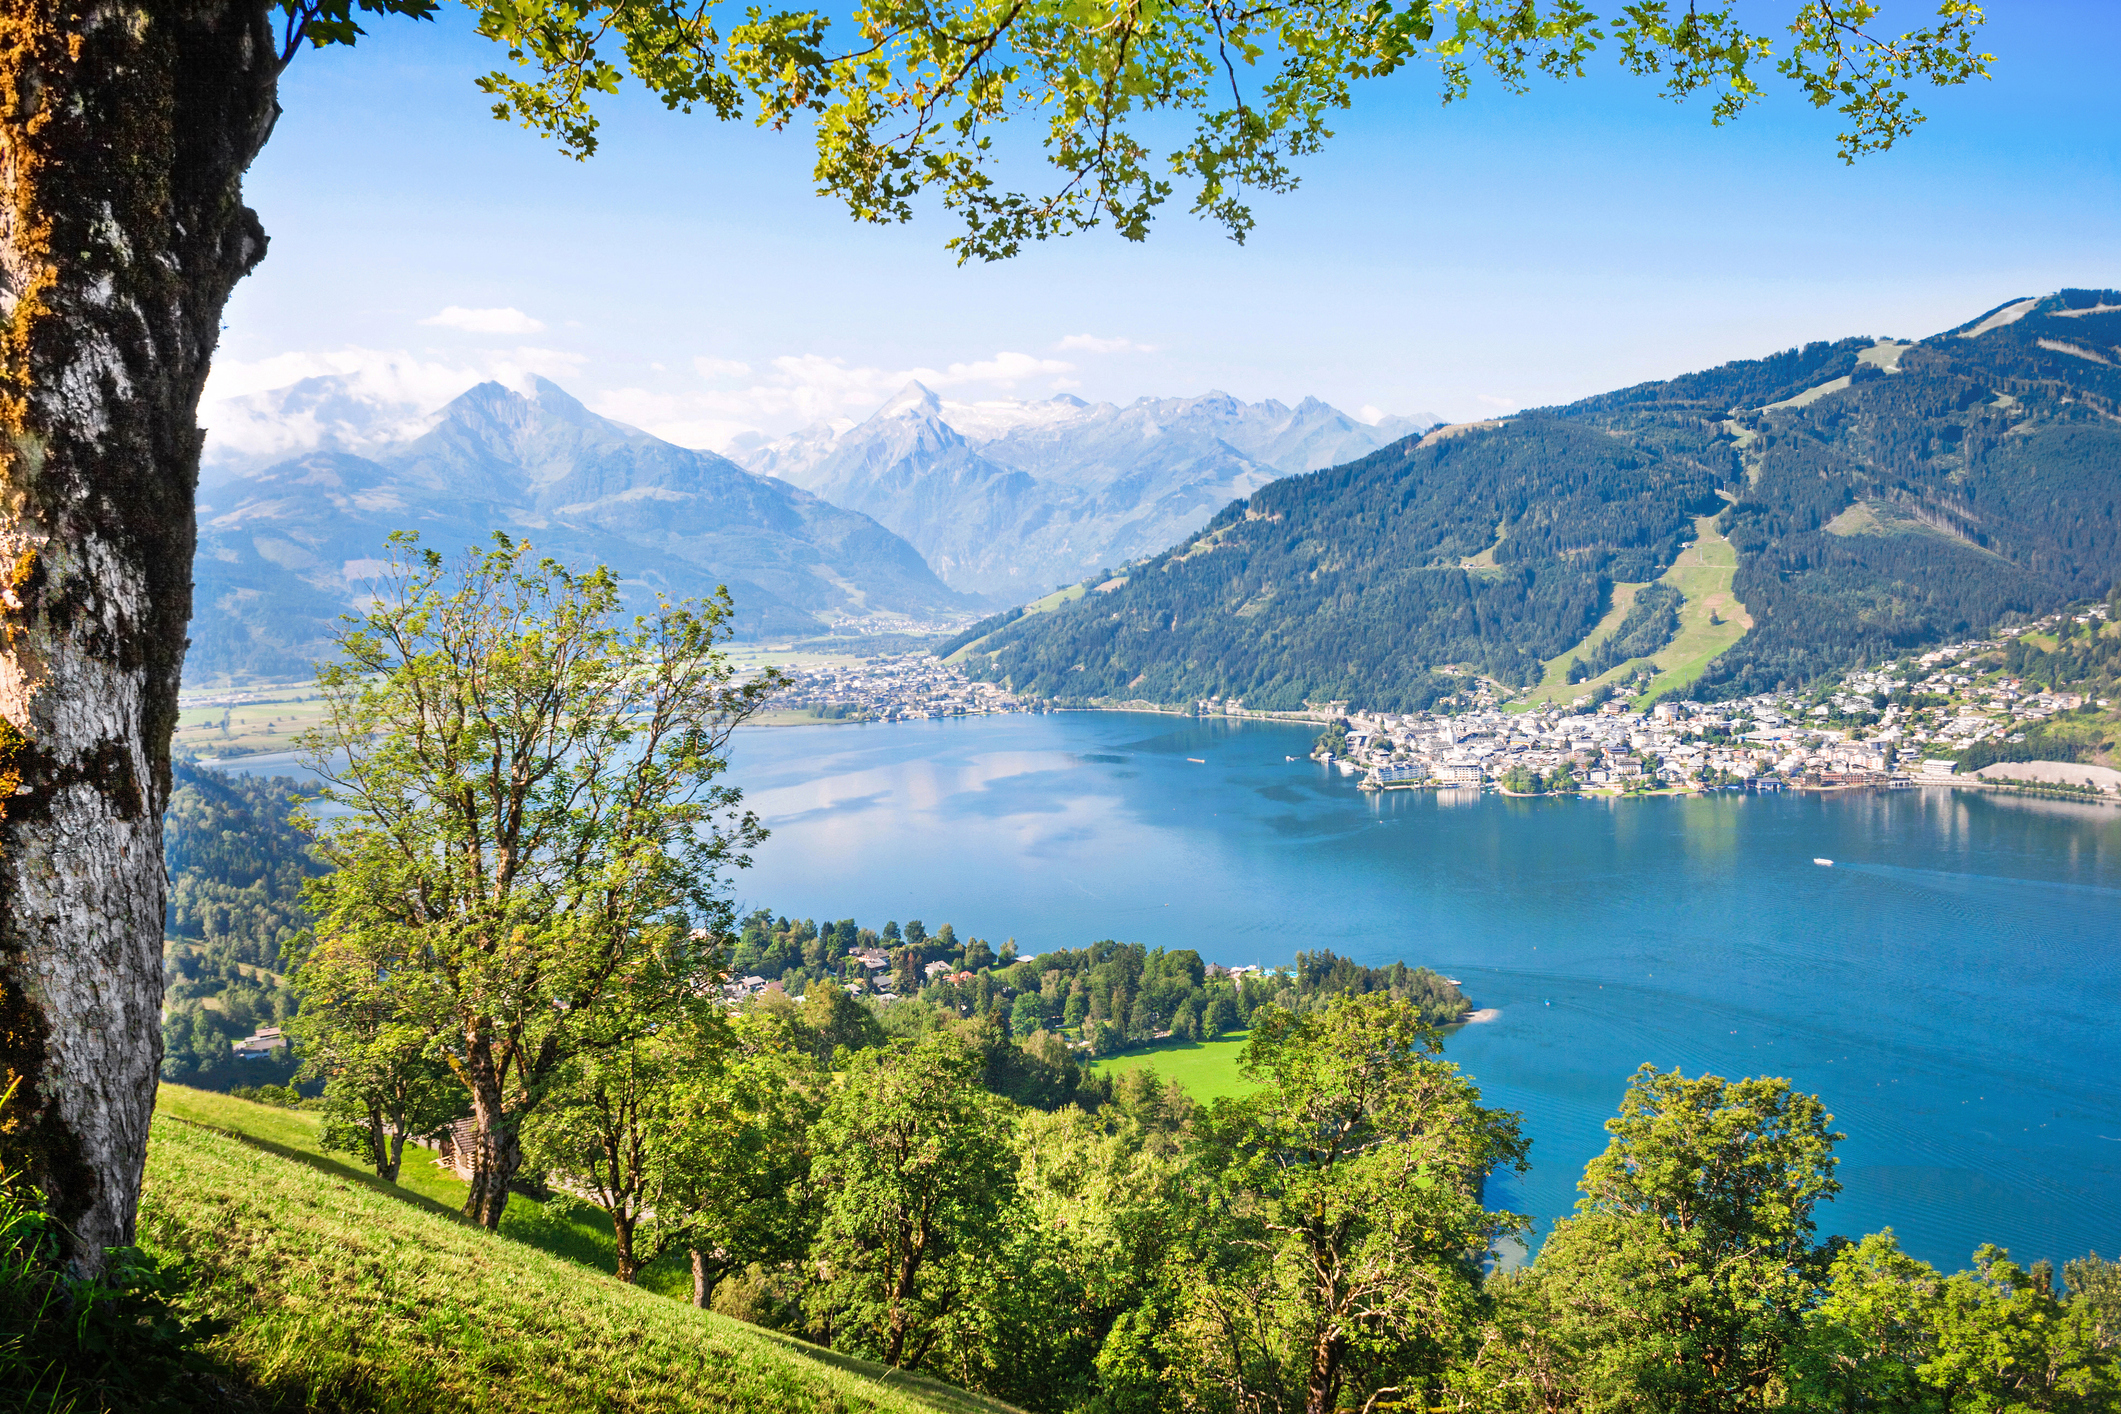 Oostenrijk; mooiste plekken, steden, dorpen & bezienswaardigheden - Reisliefde